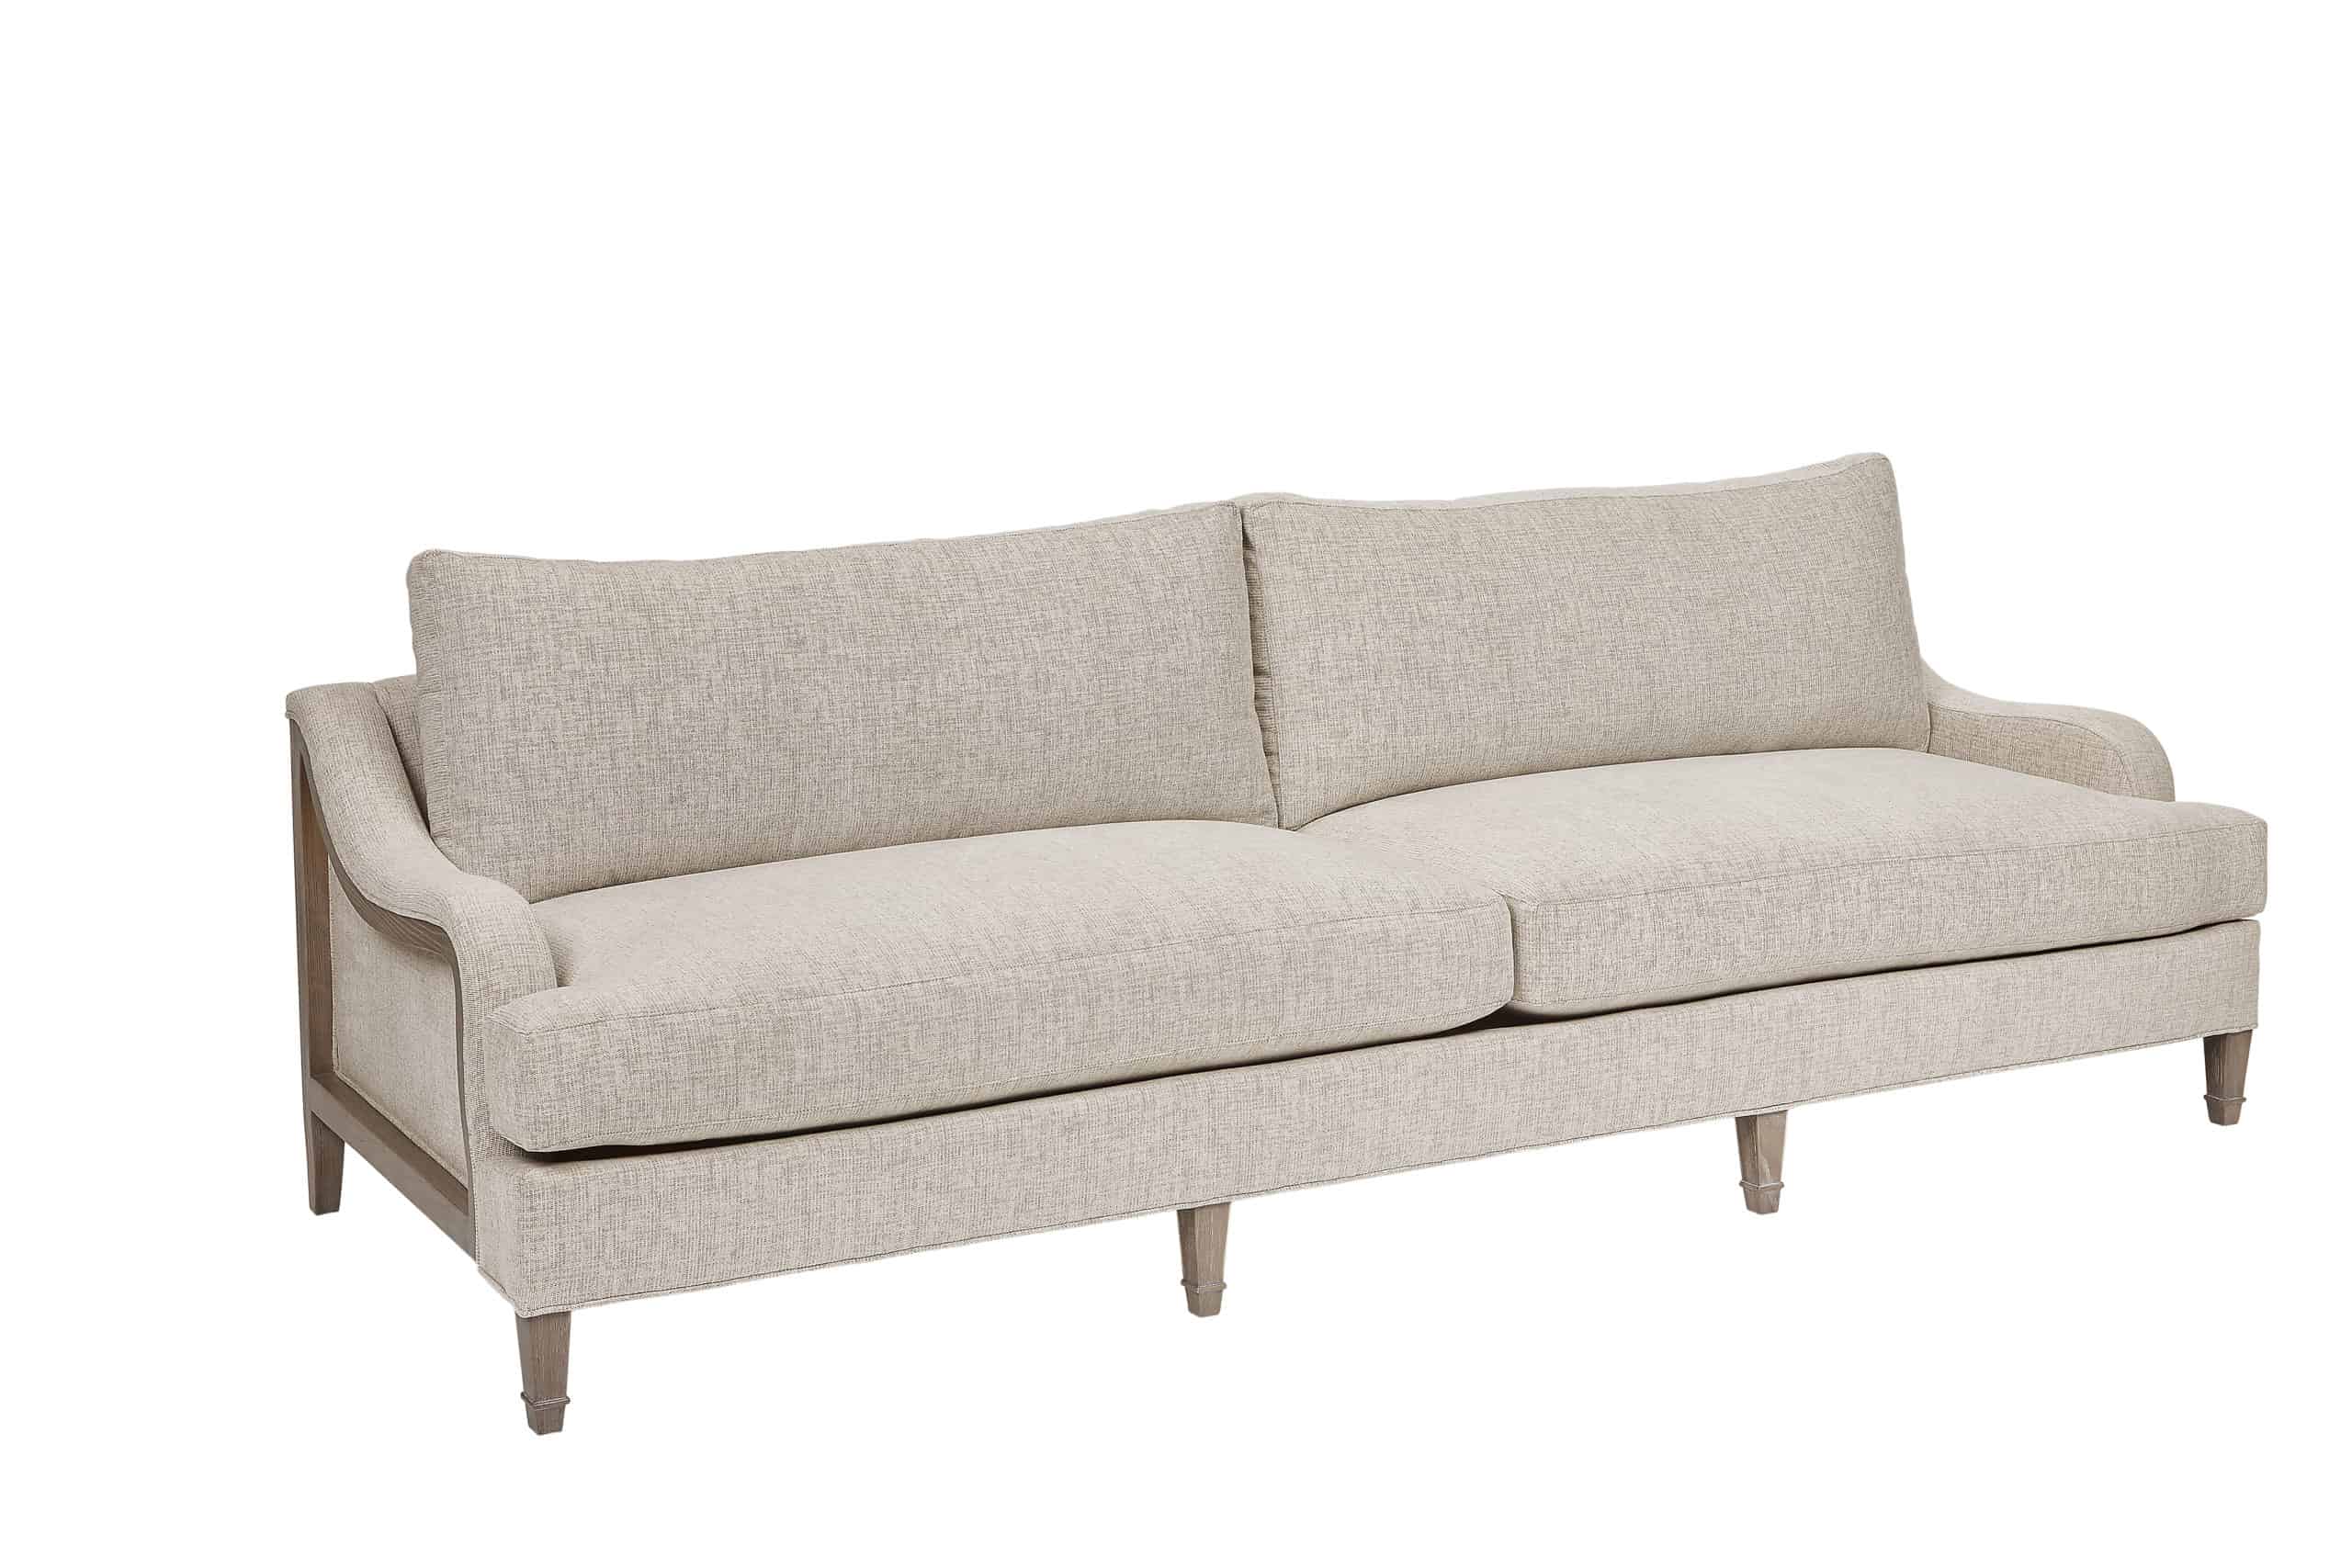 Tresco Sofa 100 Art Furniture